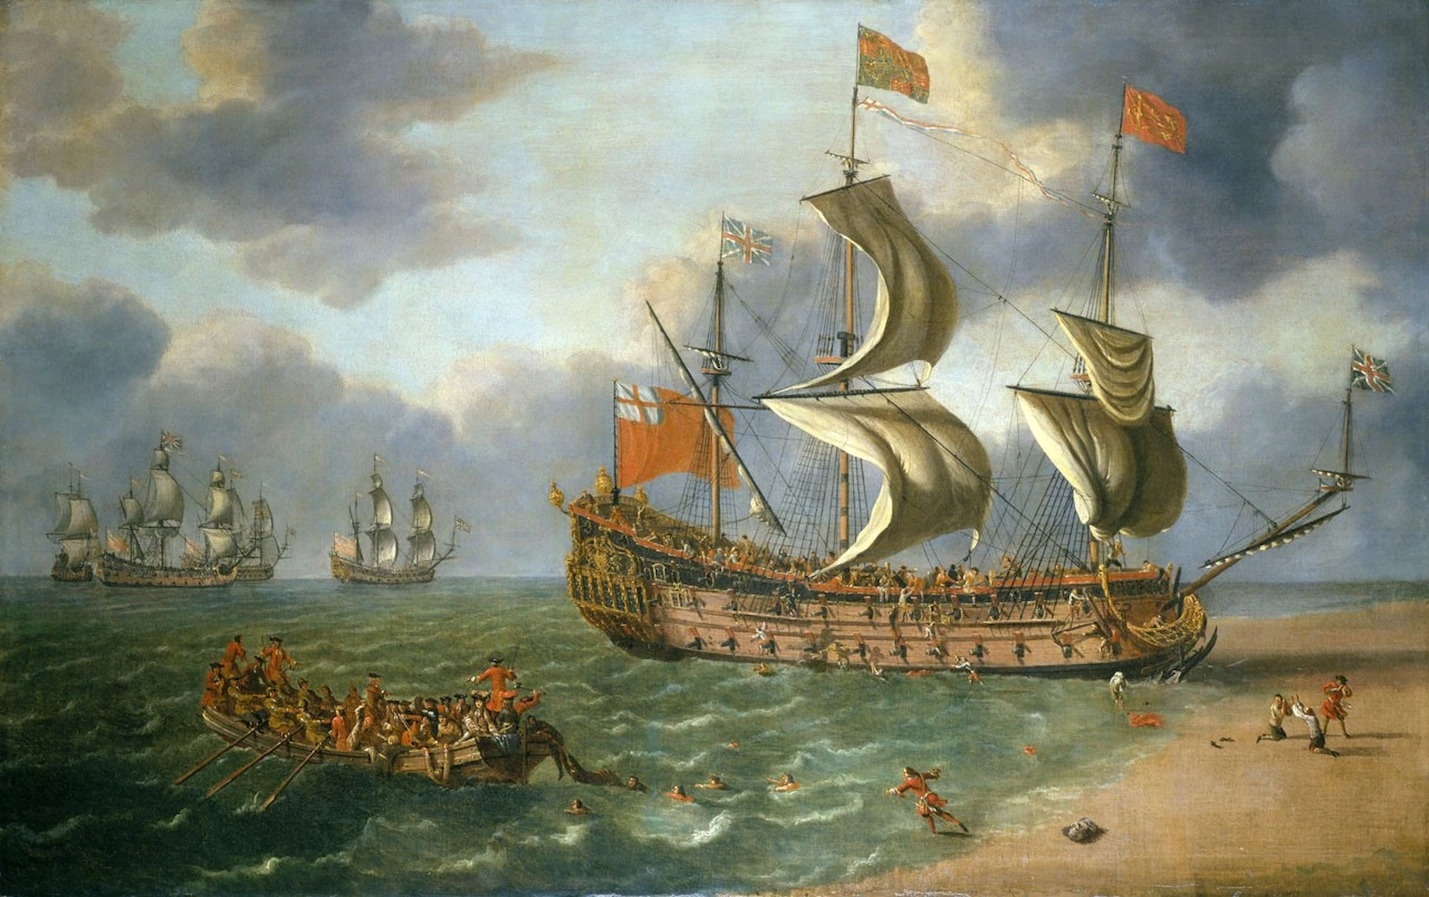 裝配有50門大砲的皇家巡防艦格洛斯特號（H.M.S. Gloucester）於1682年撞上沙洲沉沒。這場災難可說是日後英王詹姆士二世退位的肇因之一。PHOTOGRAPH VIA WIKIEMEDIA COMMONS 